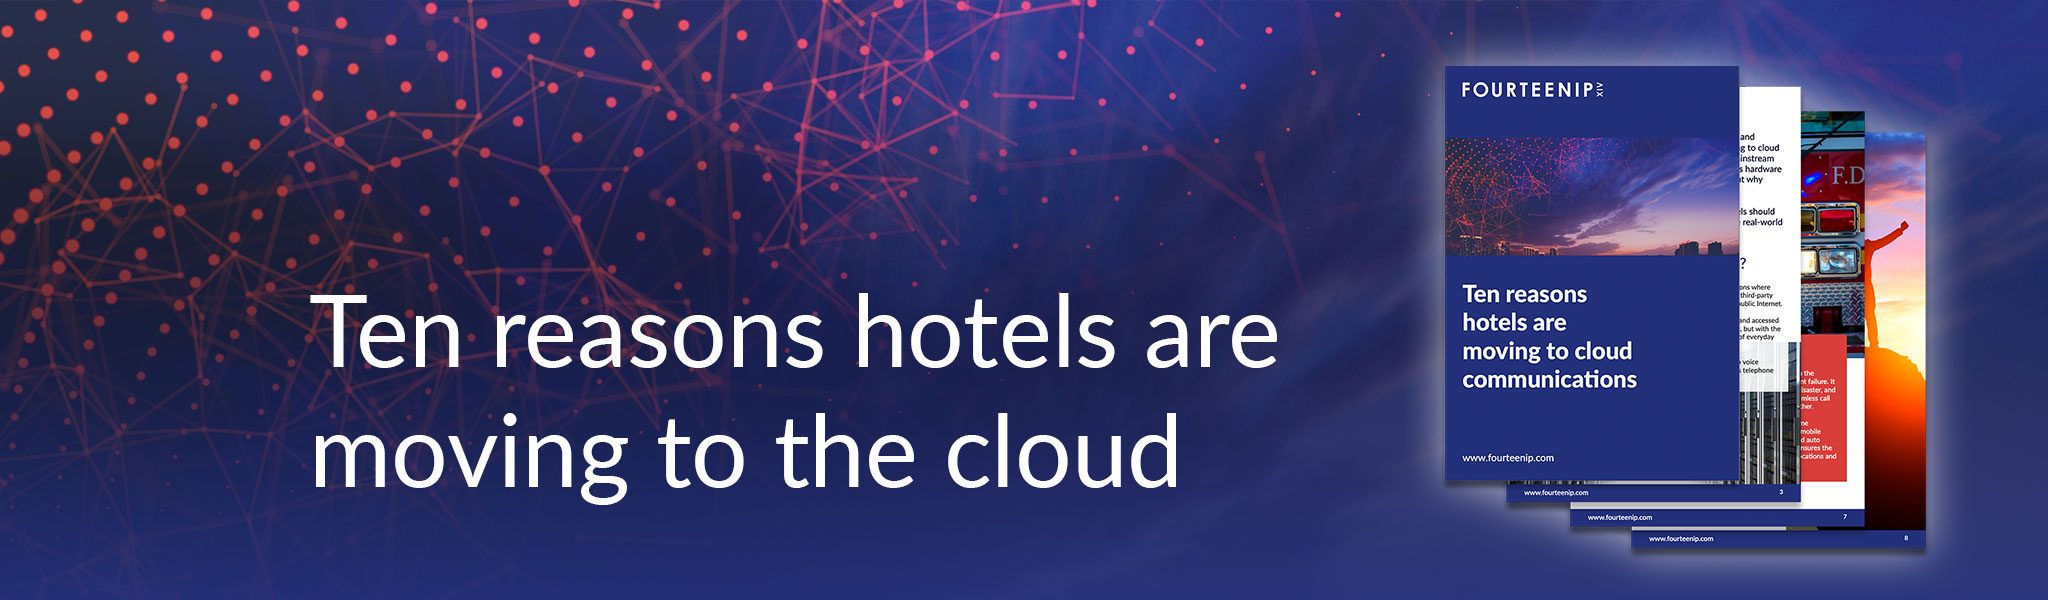 hotel cloud communications